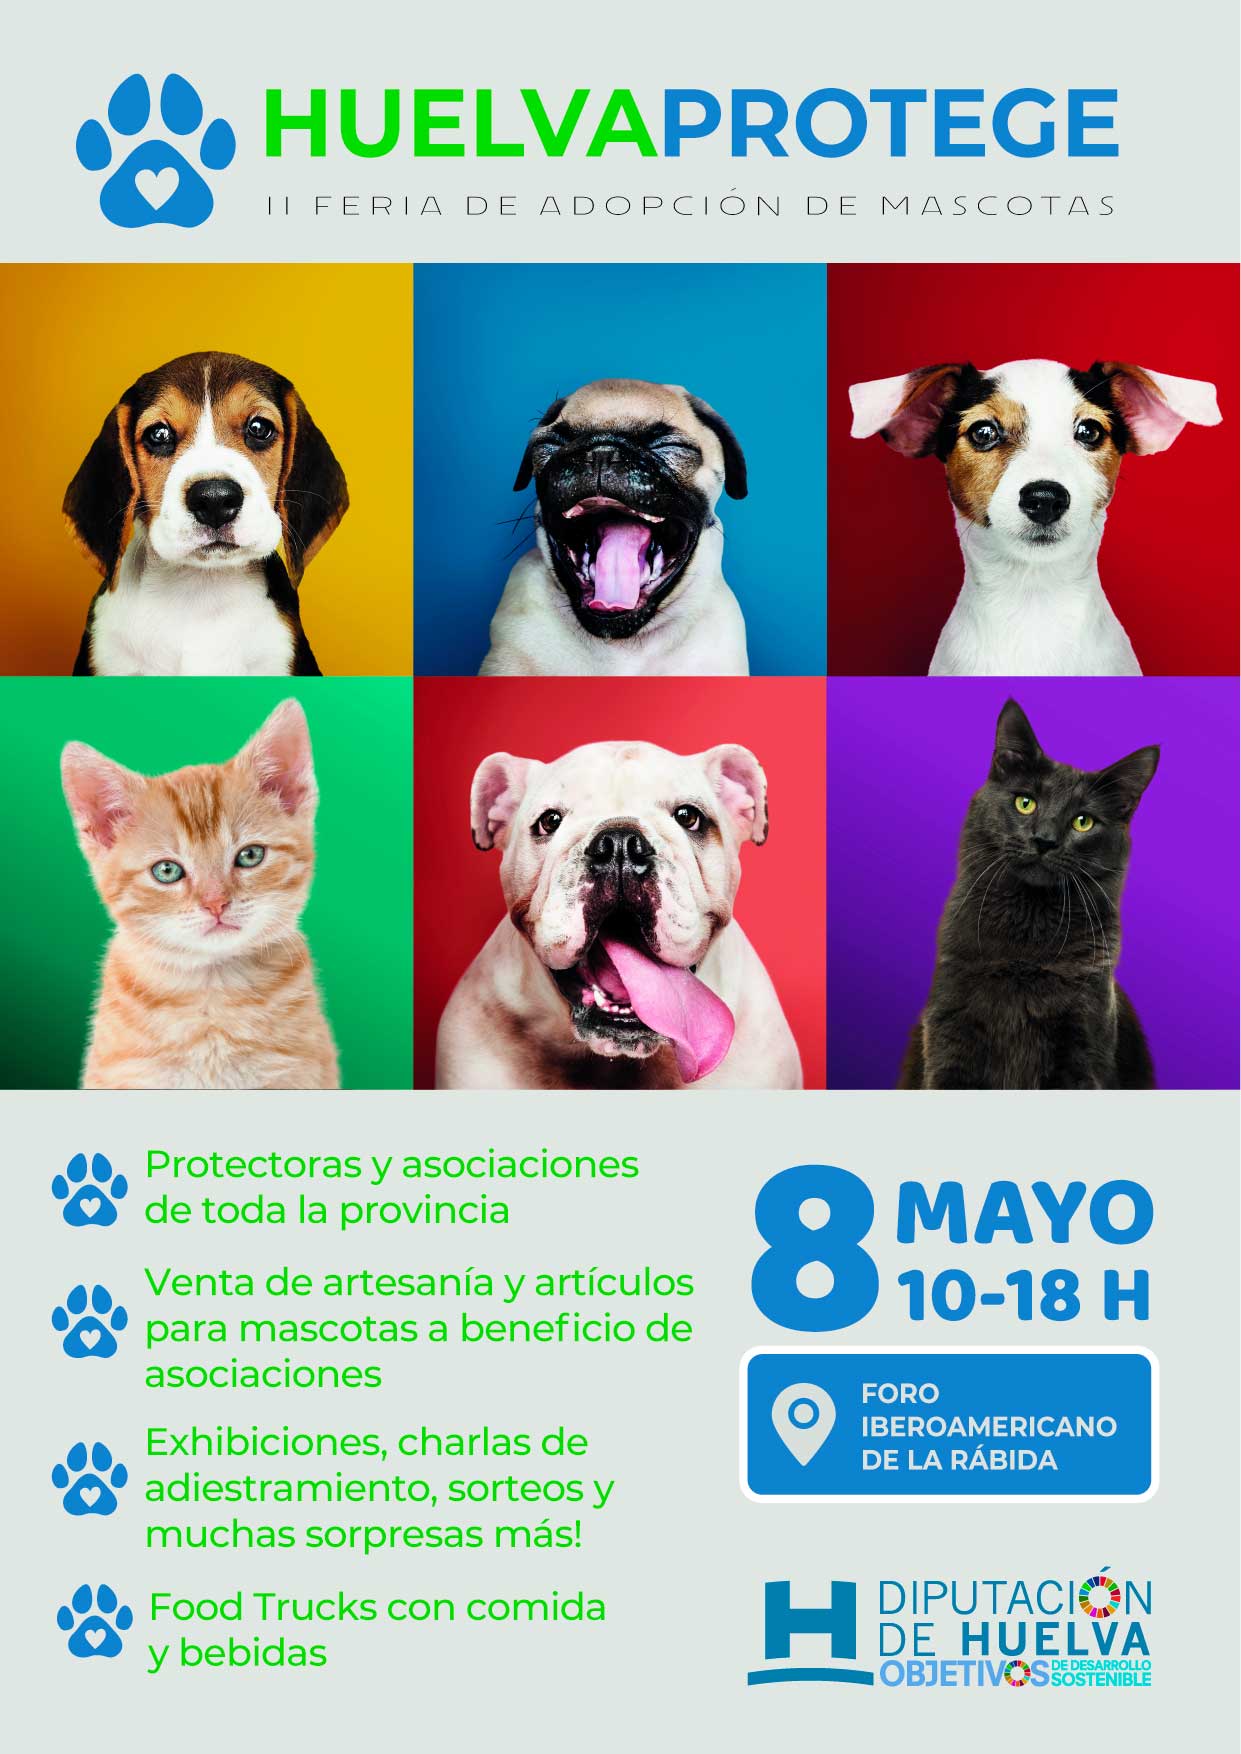 2ª Feria Adopción de Mascotas Huelva Protege 2022